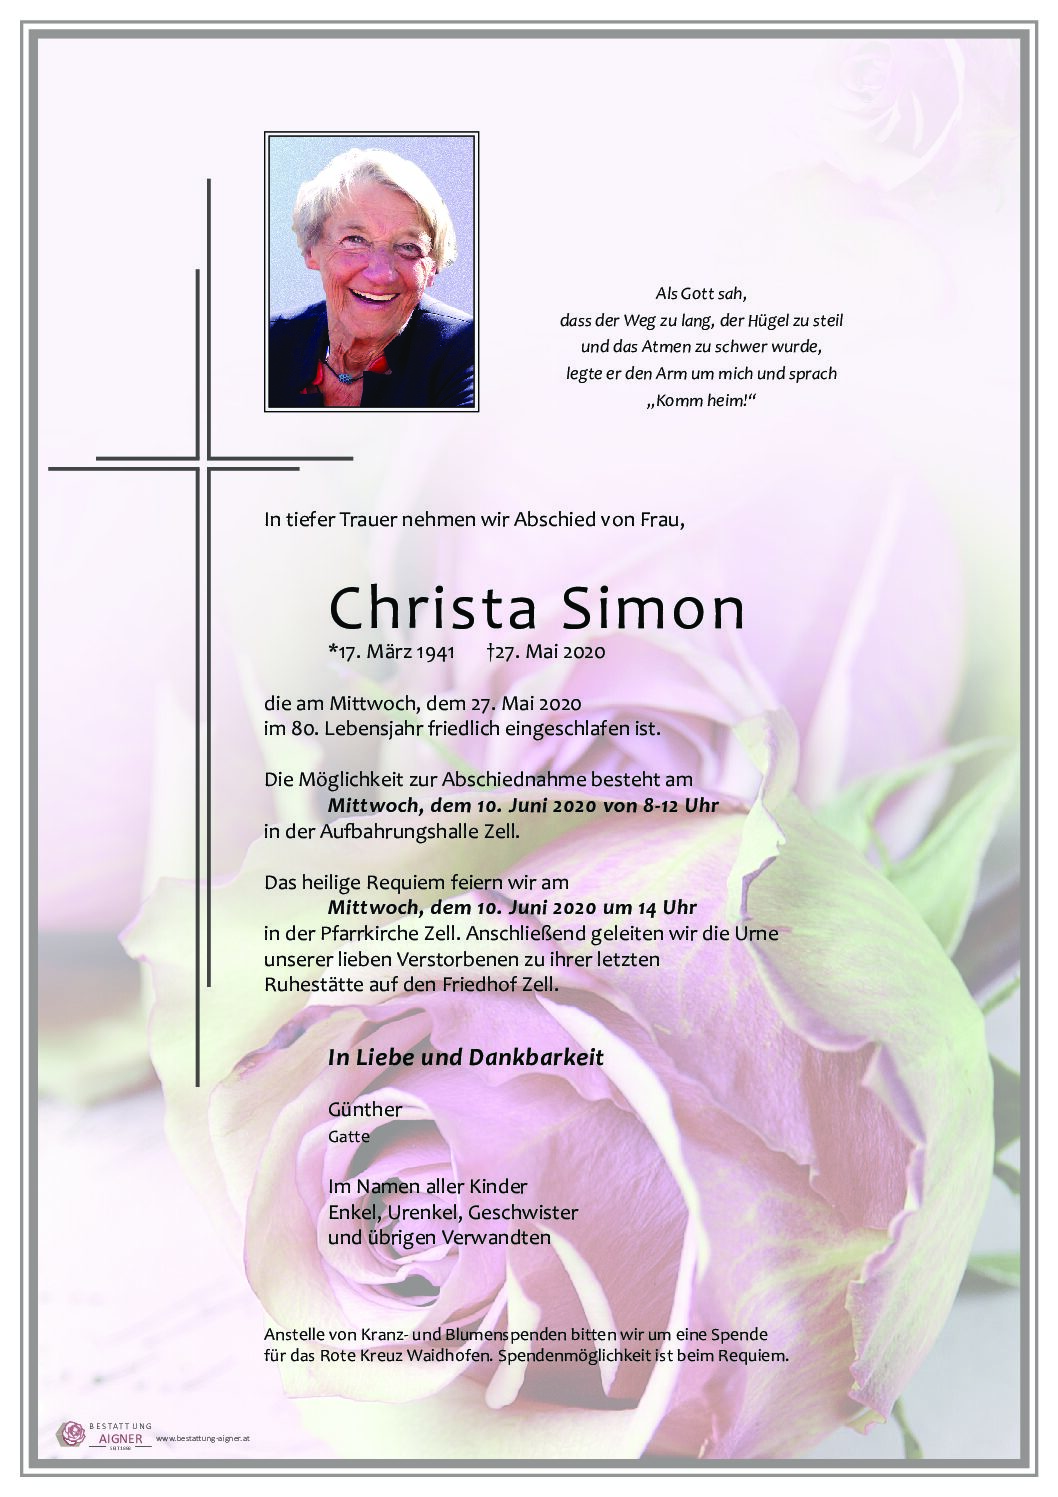 Christa Simon